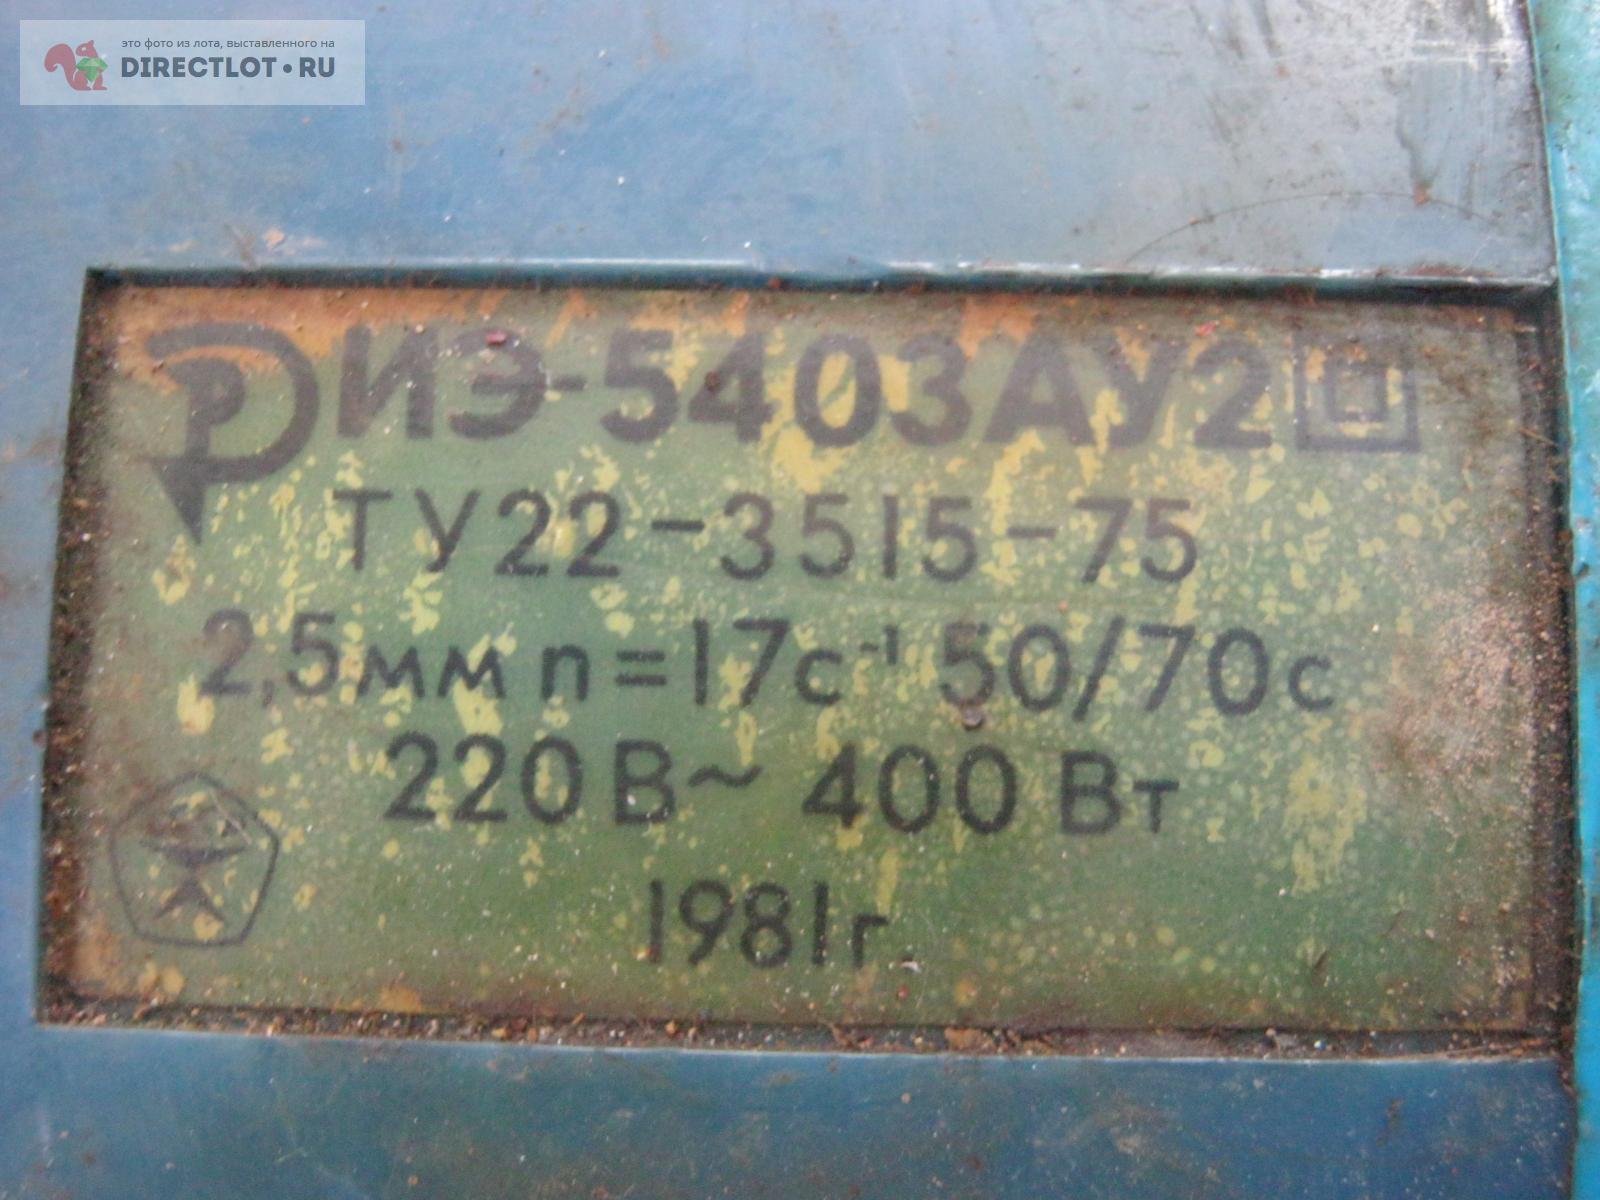 Электроножницы по металлу ЭИ 5403.  в Симферополе цена 3000 Р на .